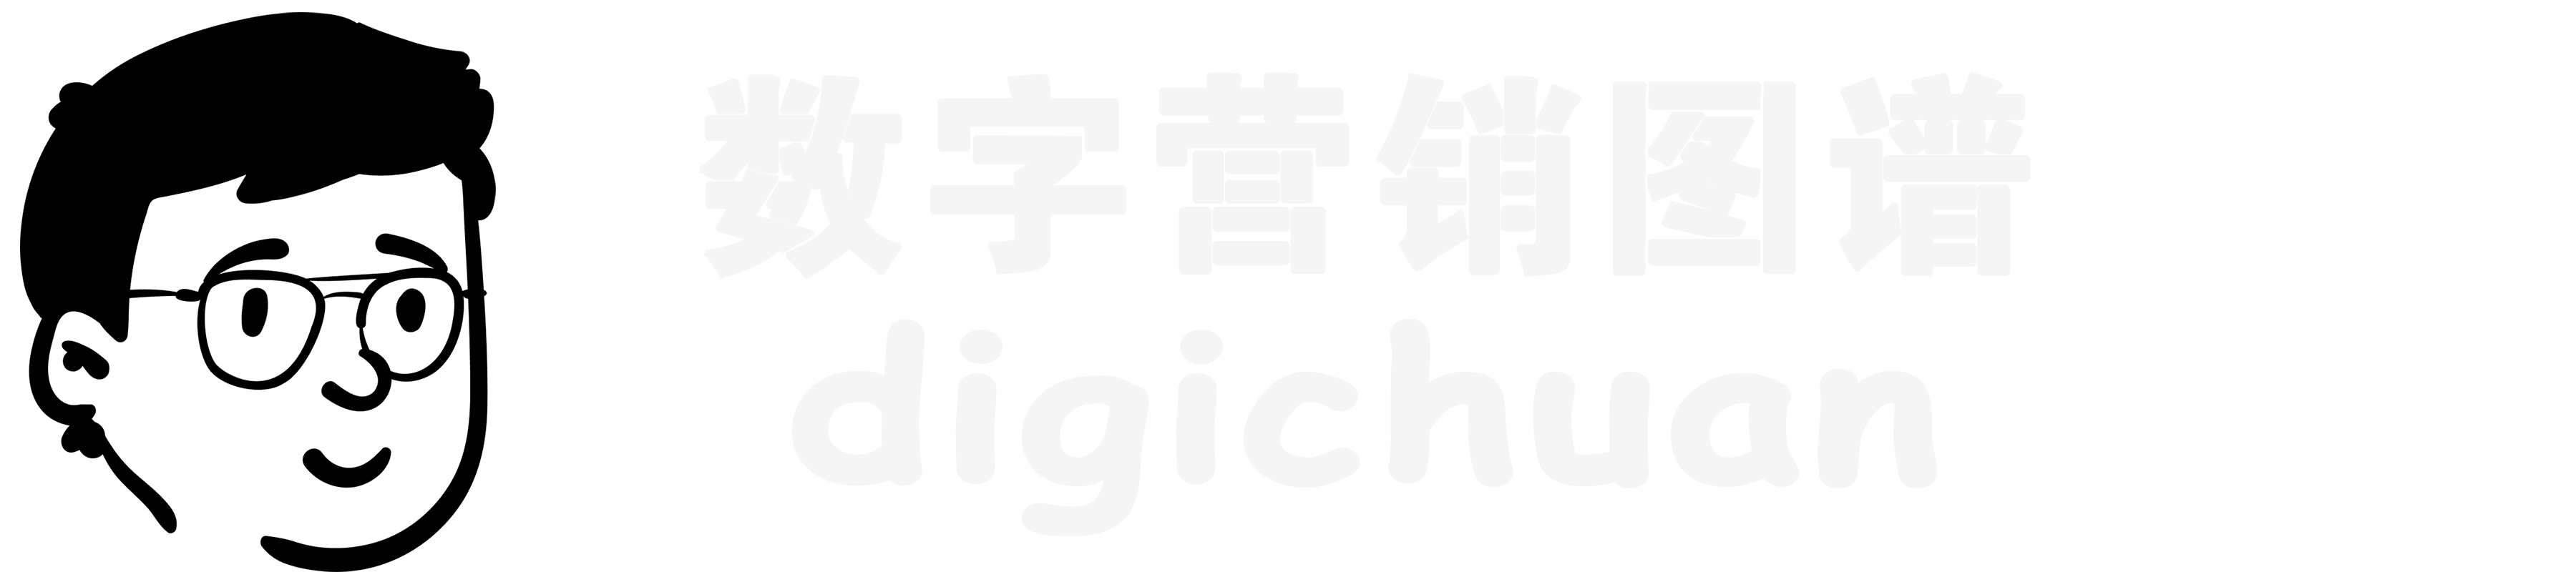 DigiChuan|数字营销导航